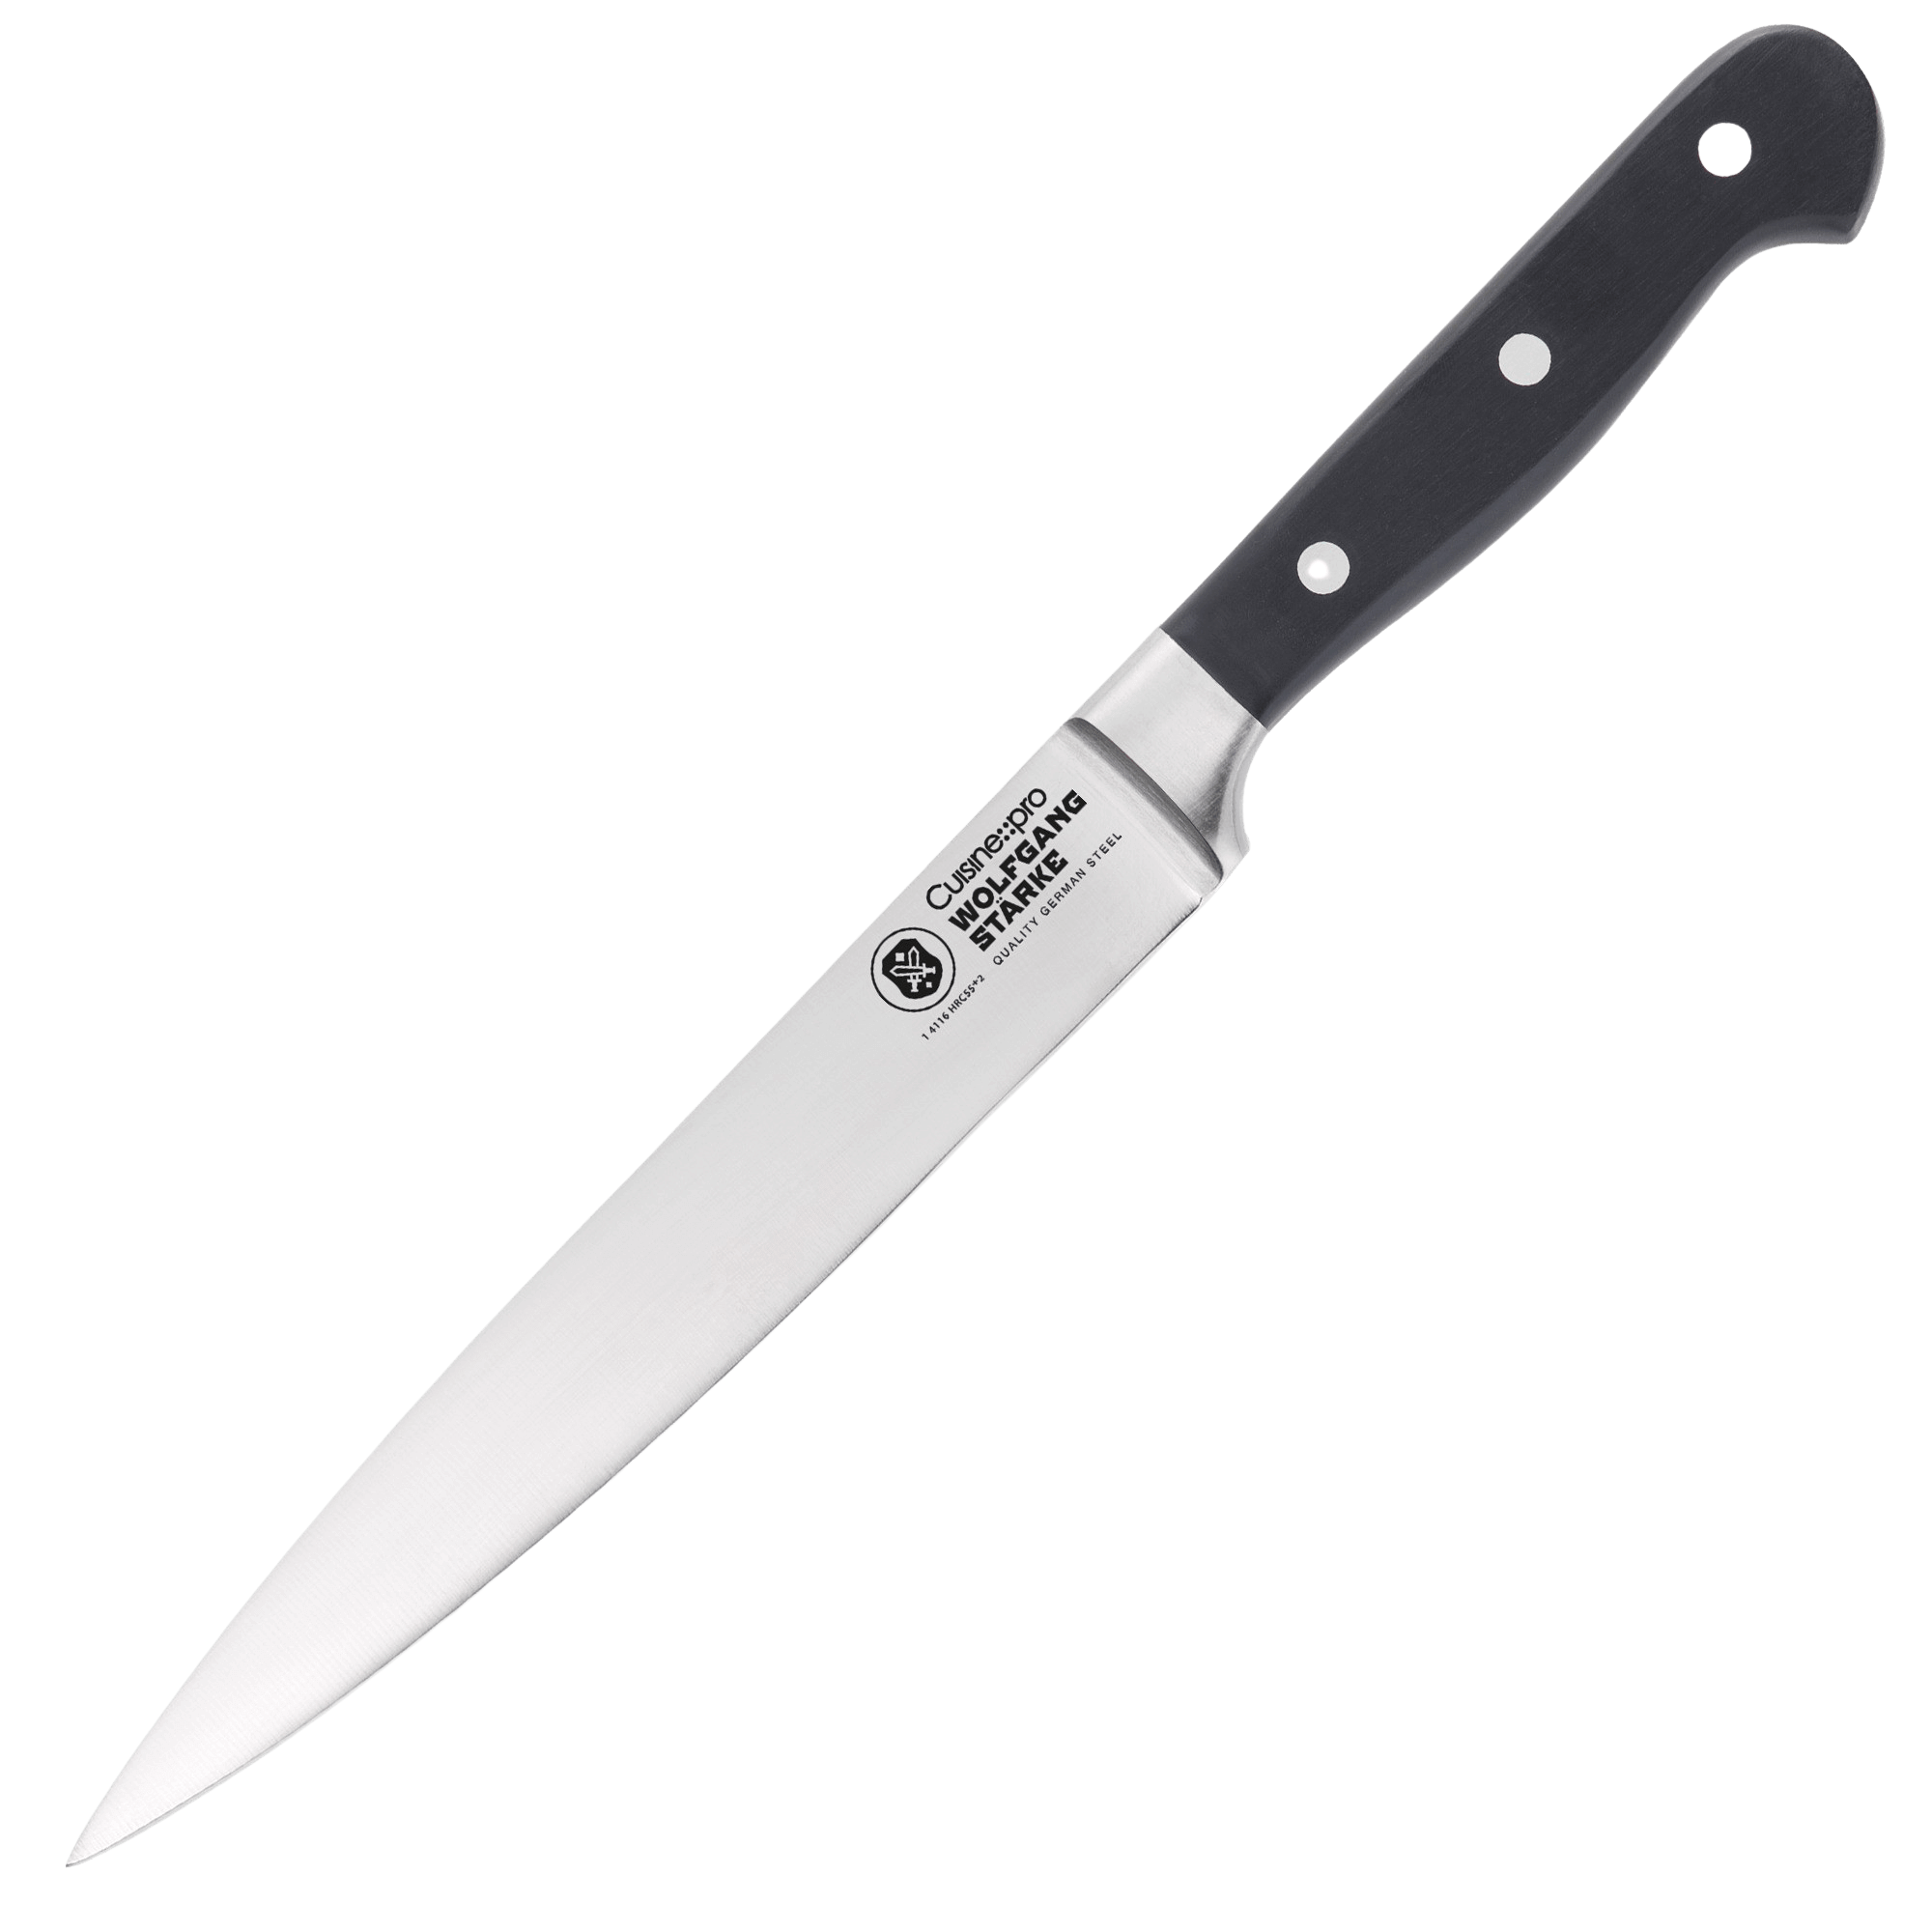 Cuisine::pro® WOLFGANG STARKE™ Carving Knife 20cm 8"